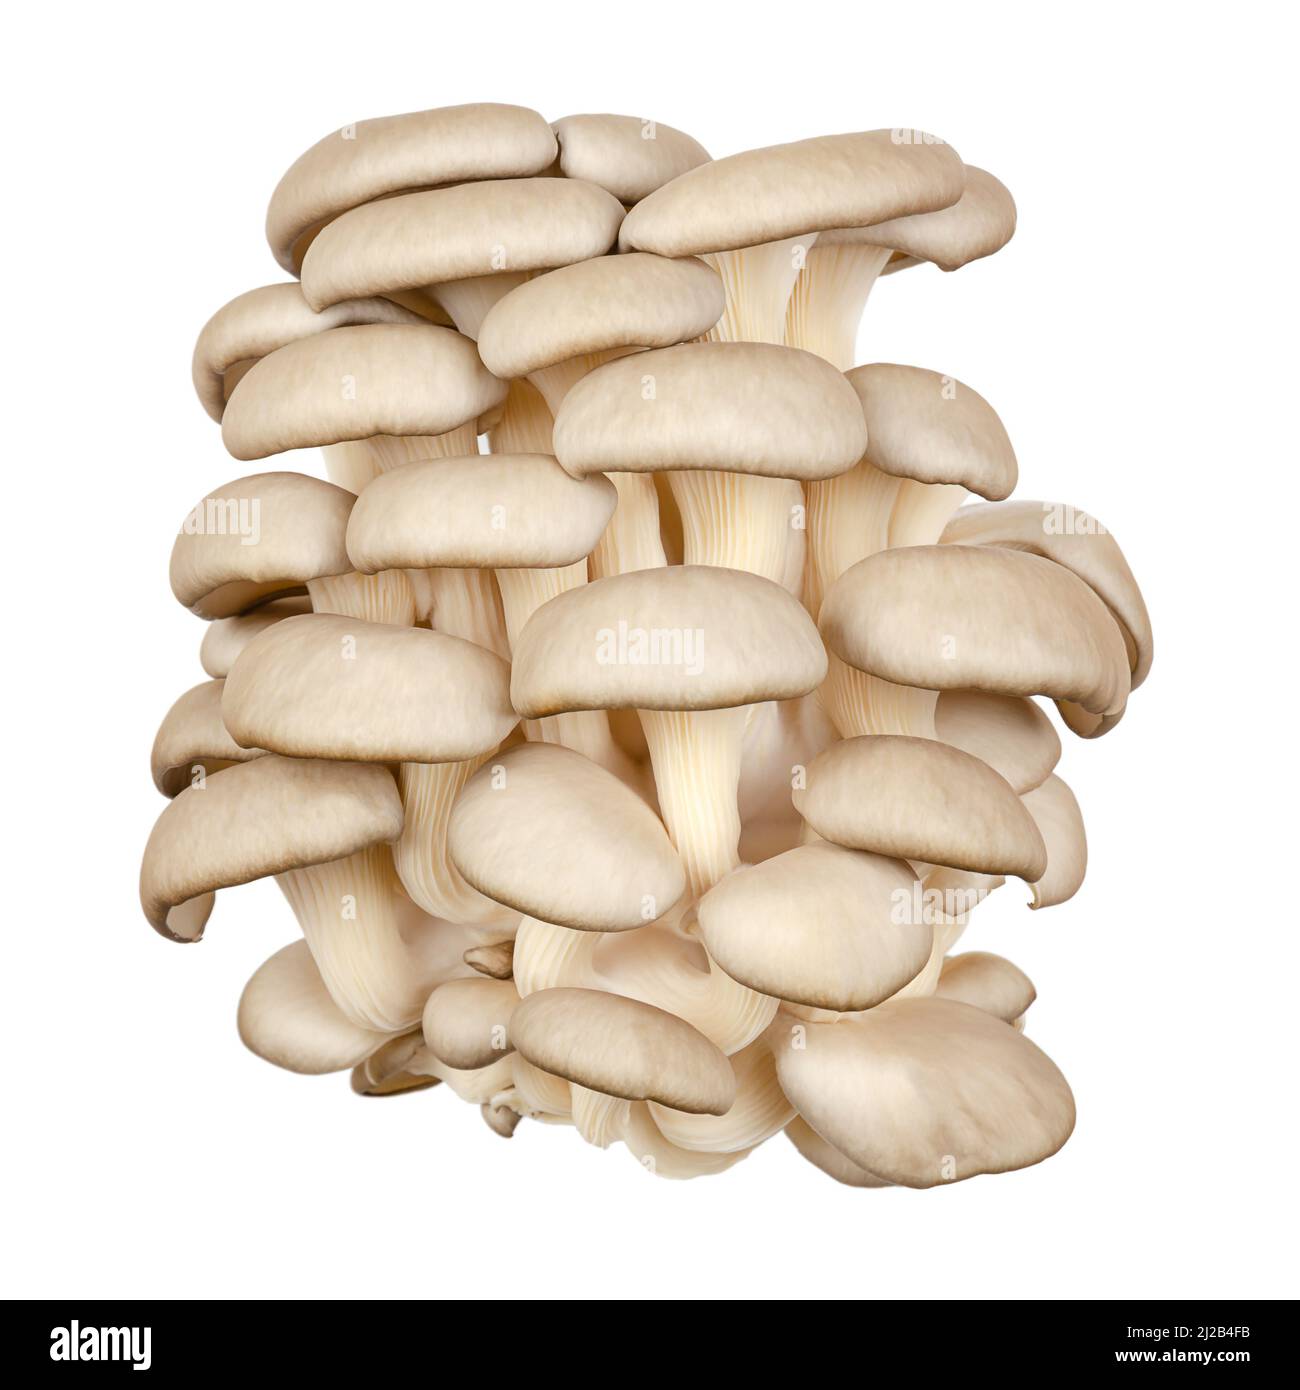 Cluster frischer Austernpilze, Vorderansicht. Pleurotus, auch als Abalone- oder Baumpilze bekannt. Einer der am meisten kultivierten Pilze. Stockfoto